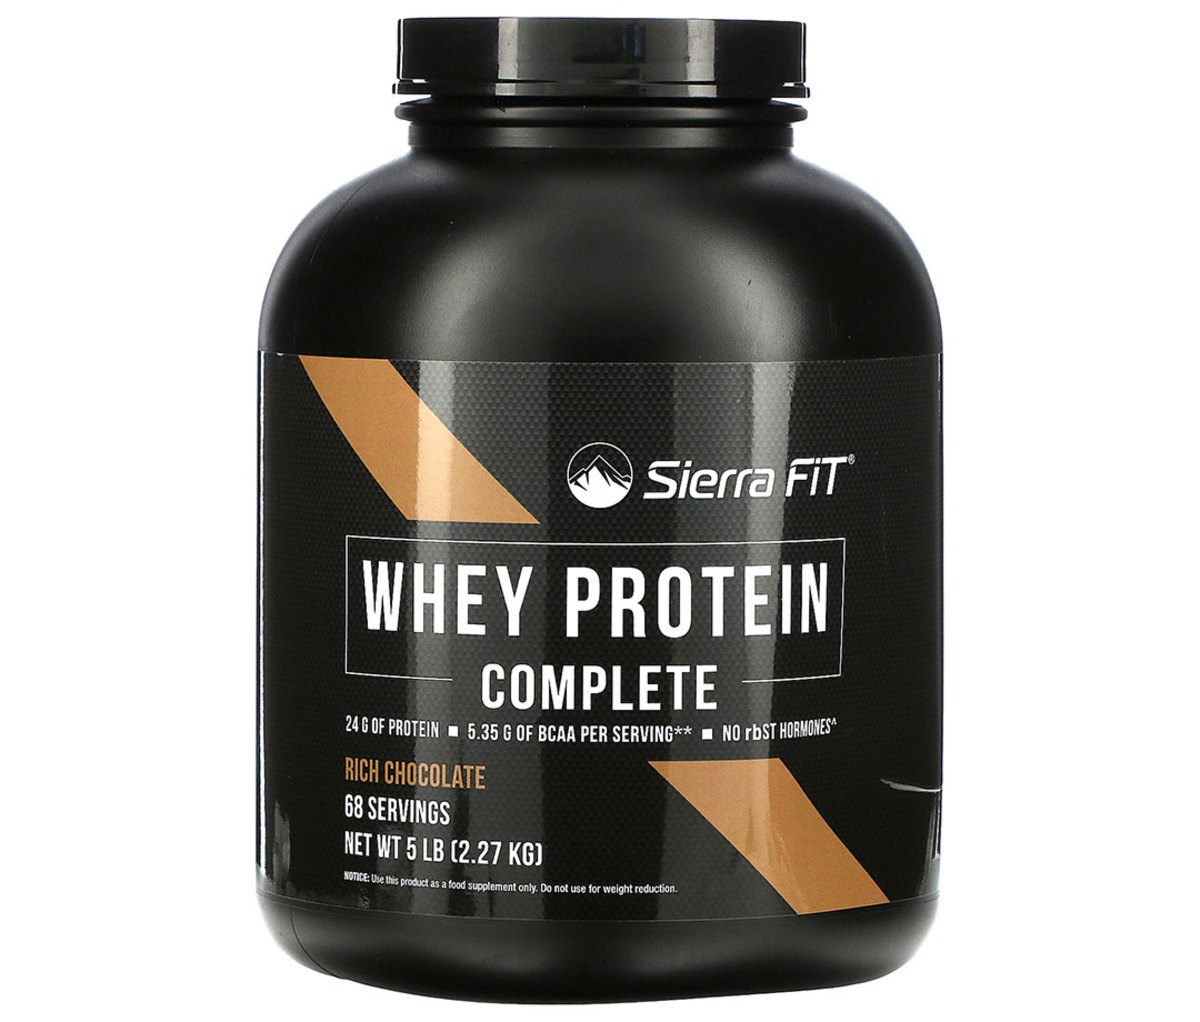 Sierra Fit Whey Protein